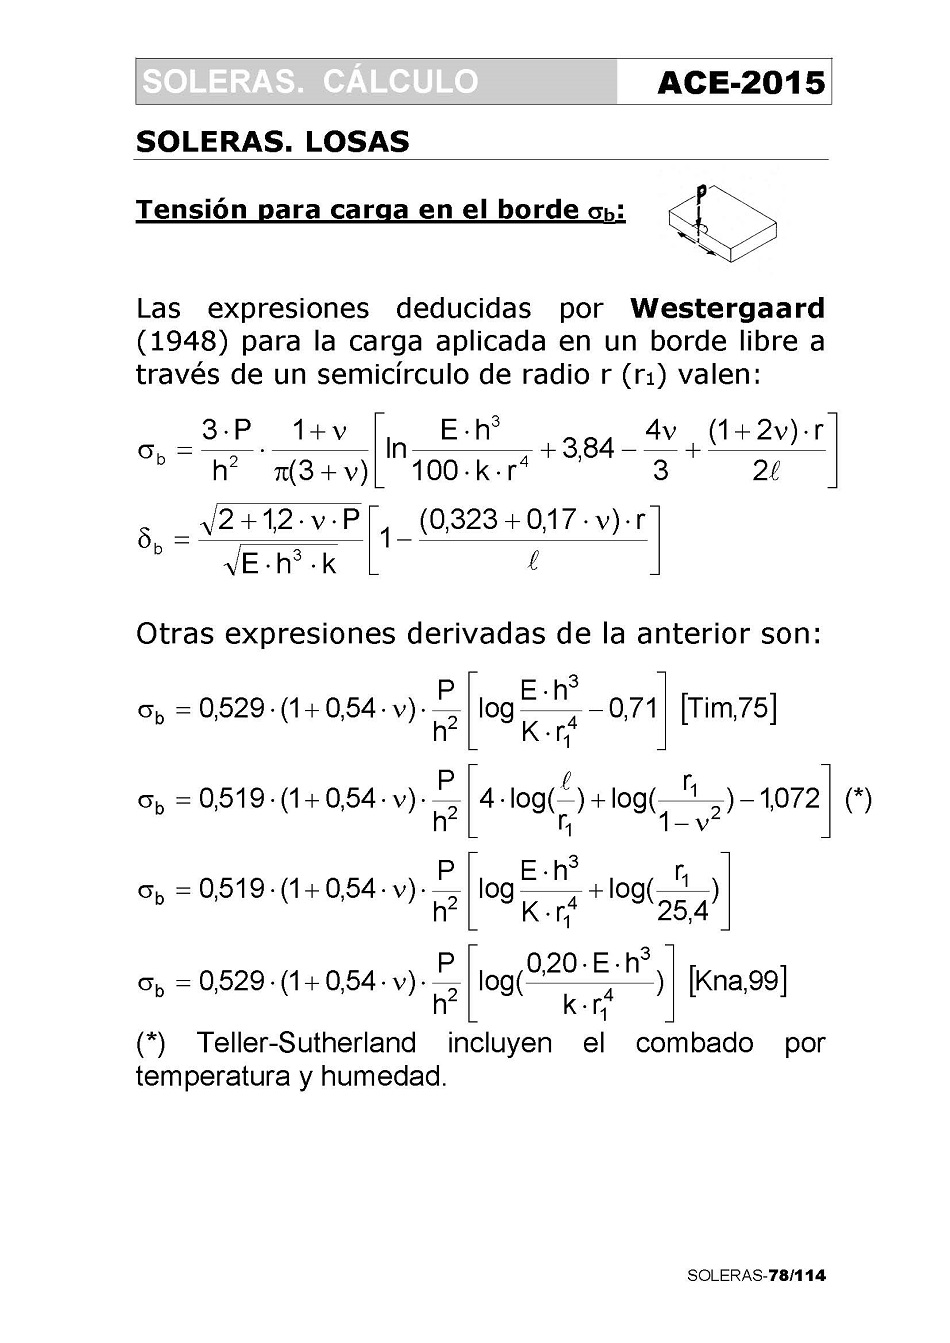 Cálculo de Soleras de Hormigón. Página 78